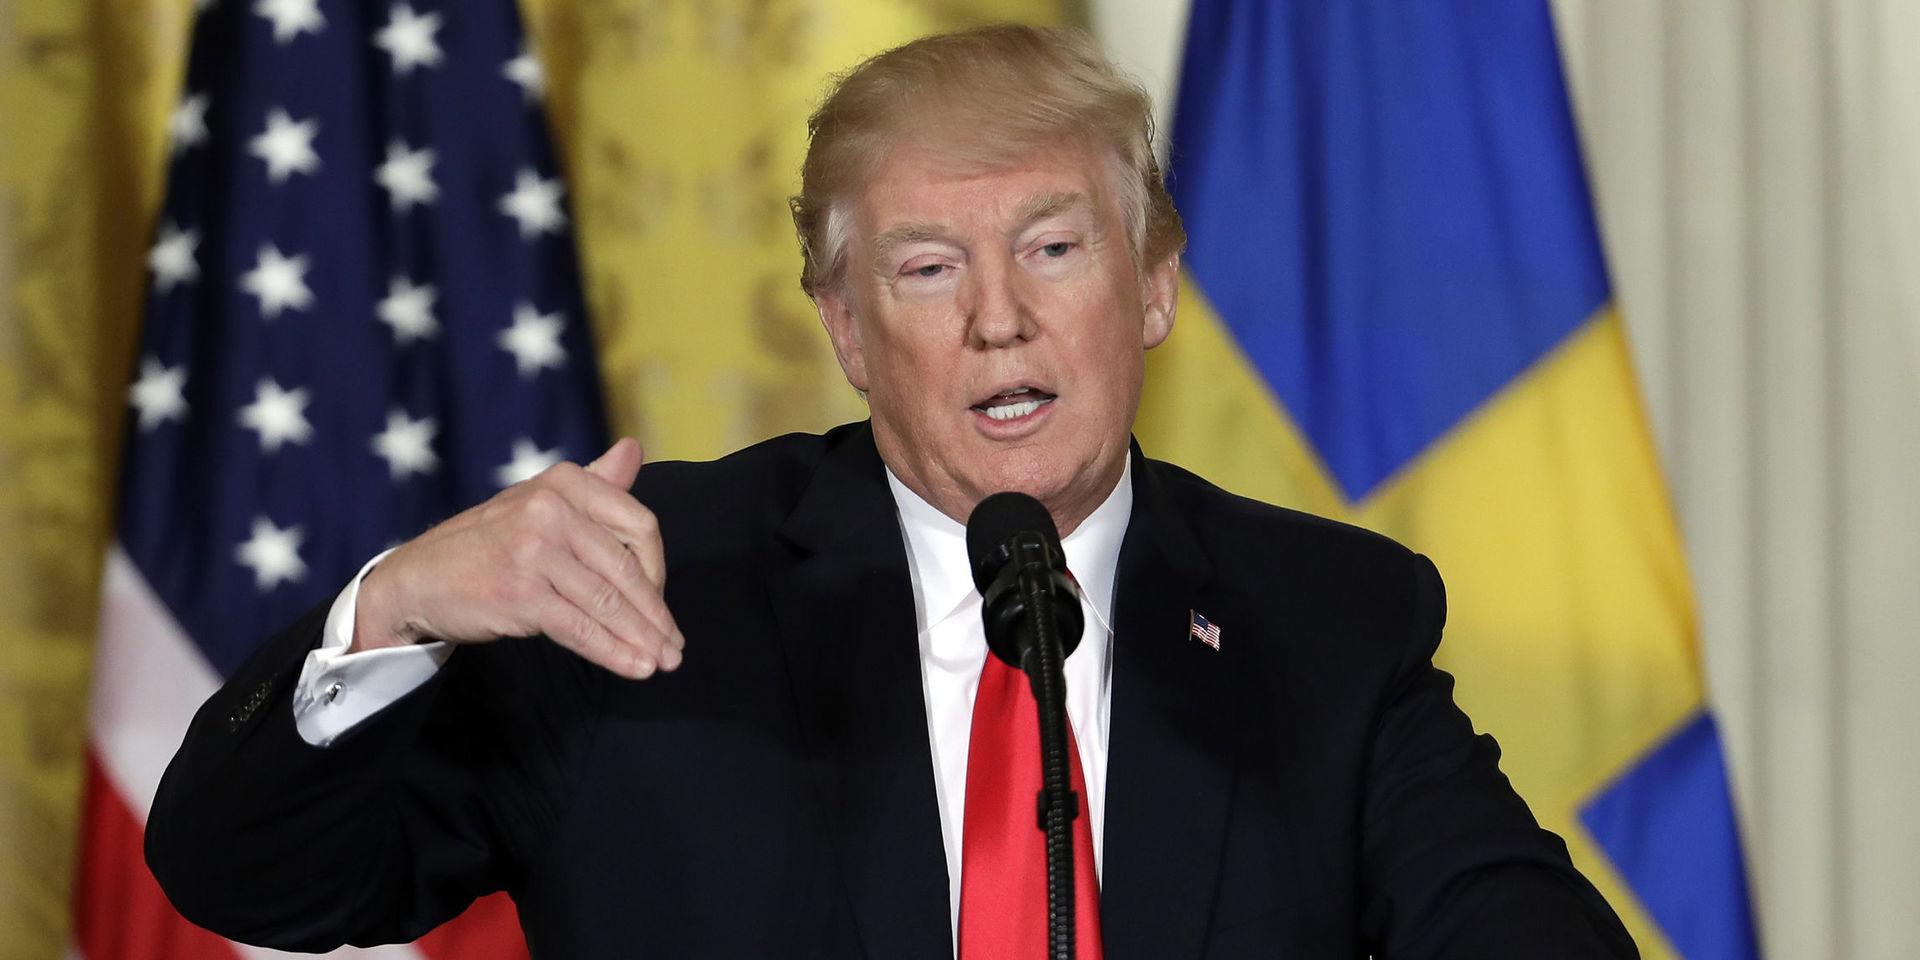 Donald Trump sa i ett utspel med riktning Sverige att USA hade haft två miljoner döda om man följt samma strategi. 